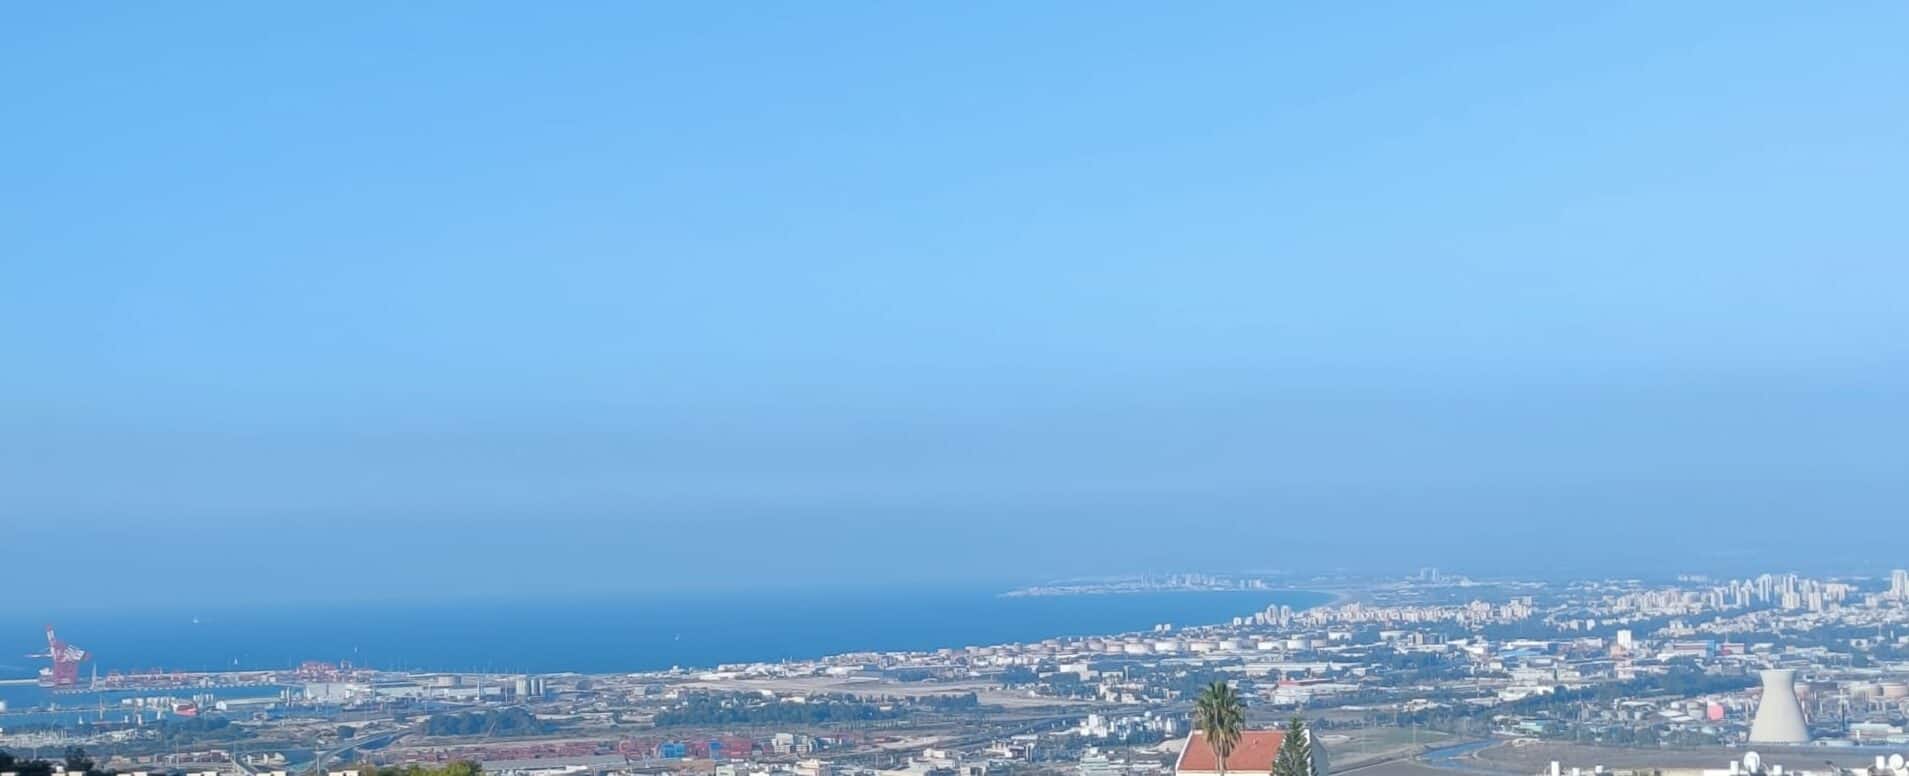 שבת שלום: סוף שבוע חמים במפרץ חיפה | חדשות NWS